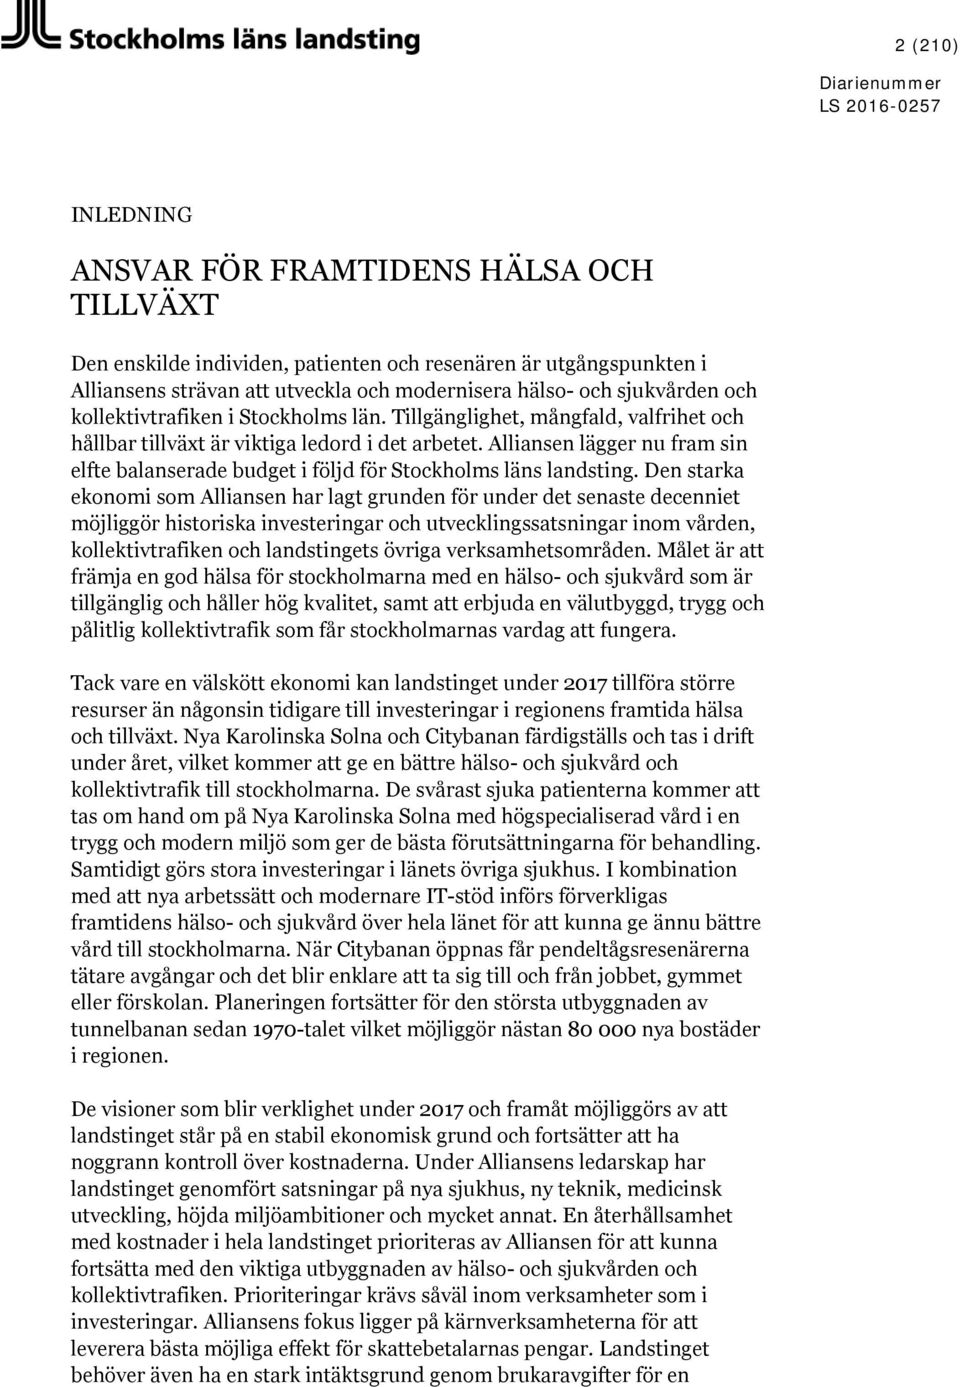 Alliansen lägger nu fram sin elfte balanserade budget i följd för Stockholms läns landsting.